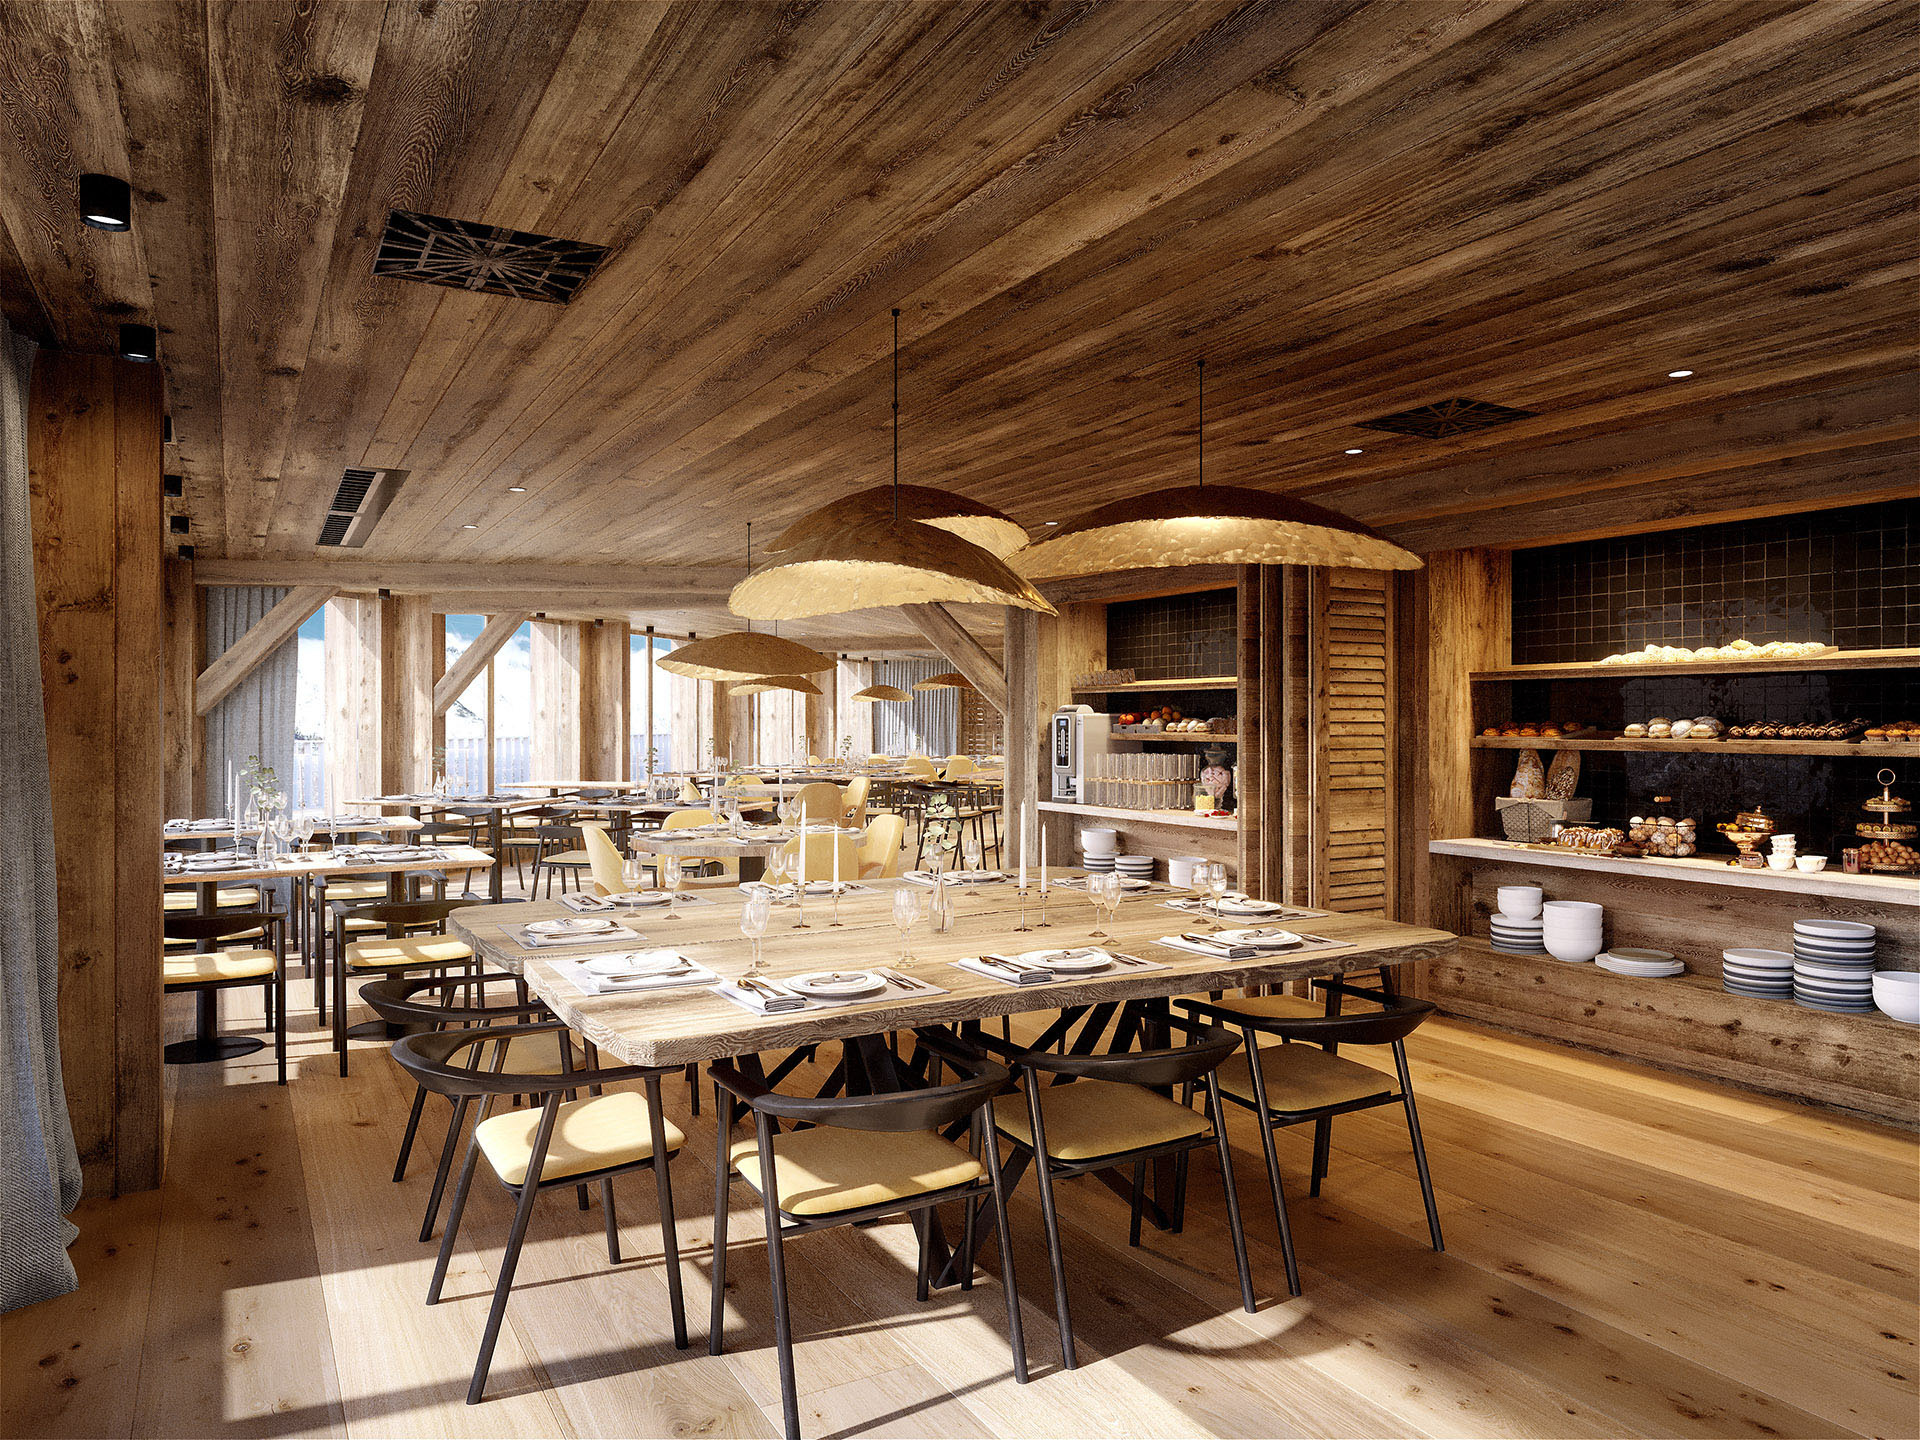 Image de synthèse 3D d'un restaurant rustique en bois dans un chalet de montagne